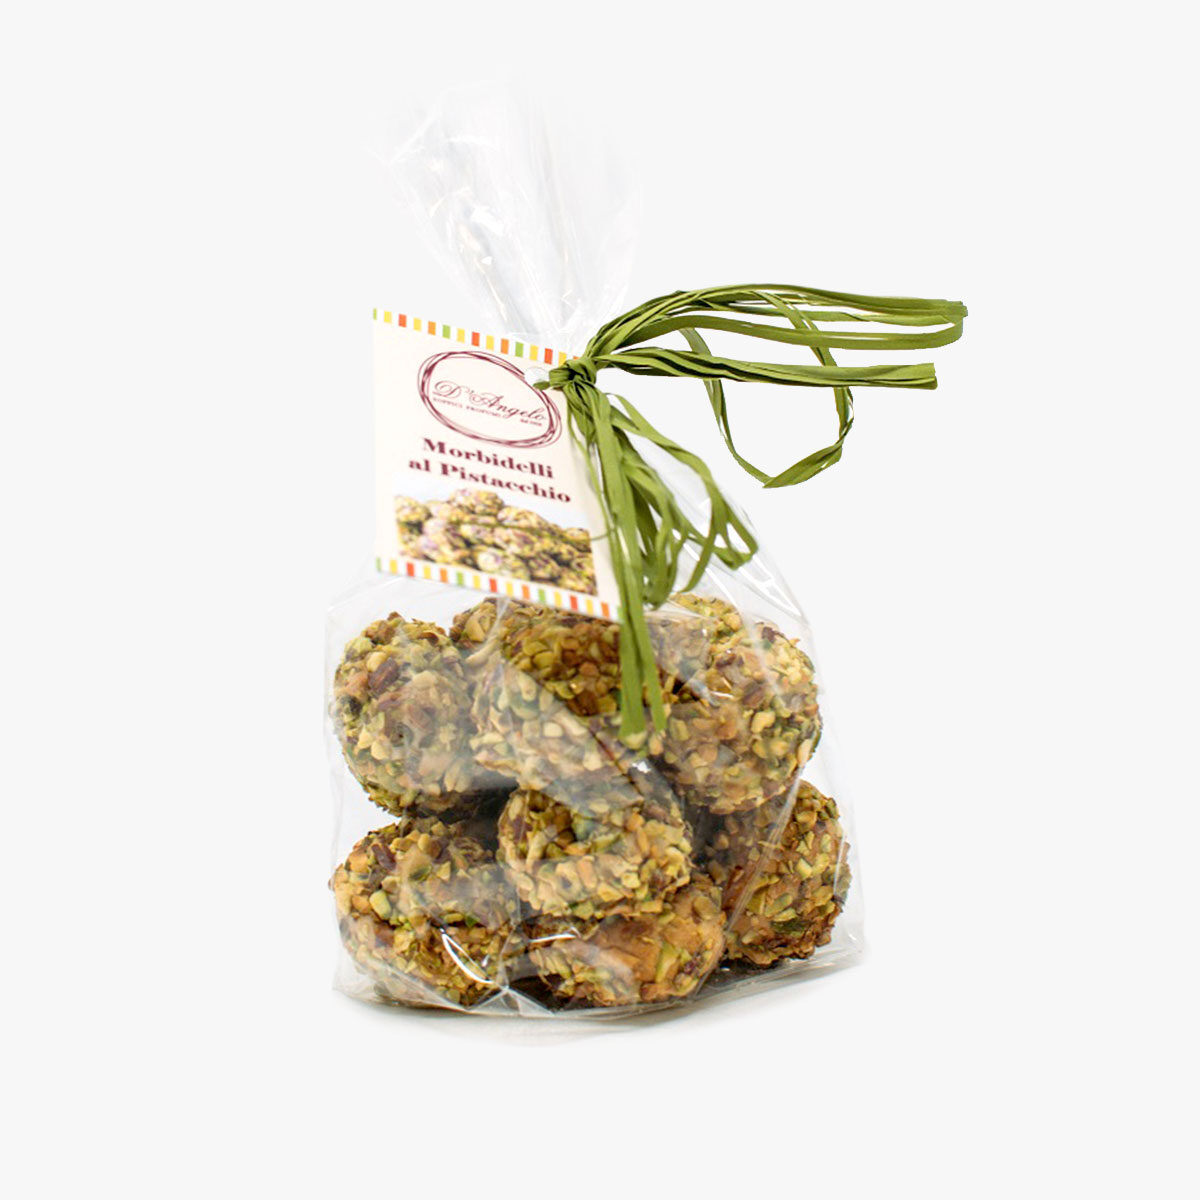 Morbidelli al pistacchio - Panificio D'Angelo